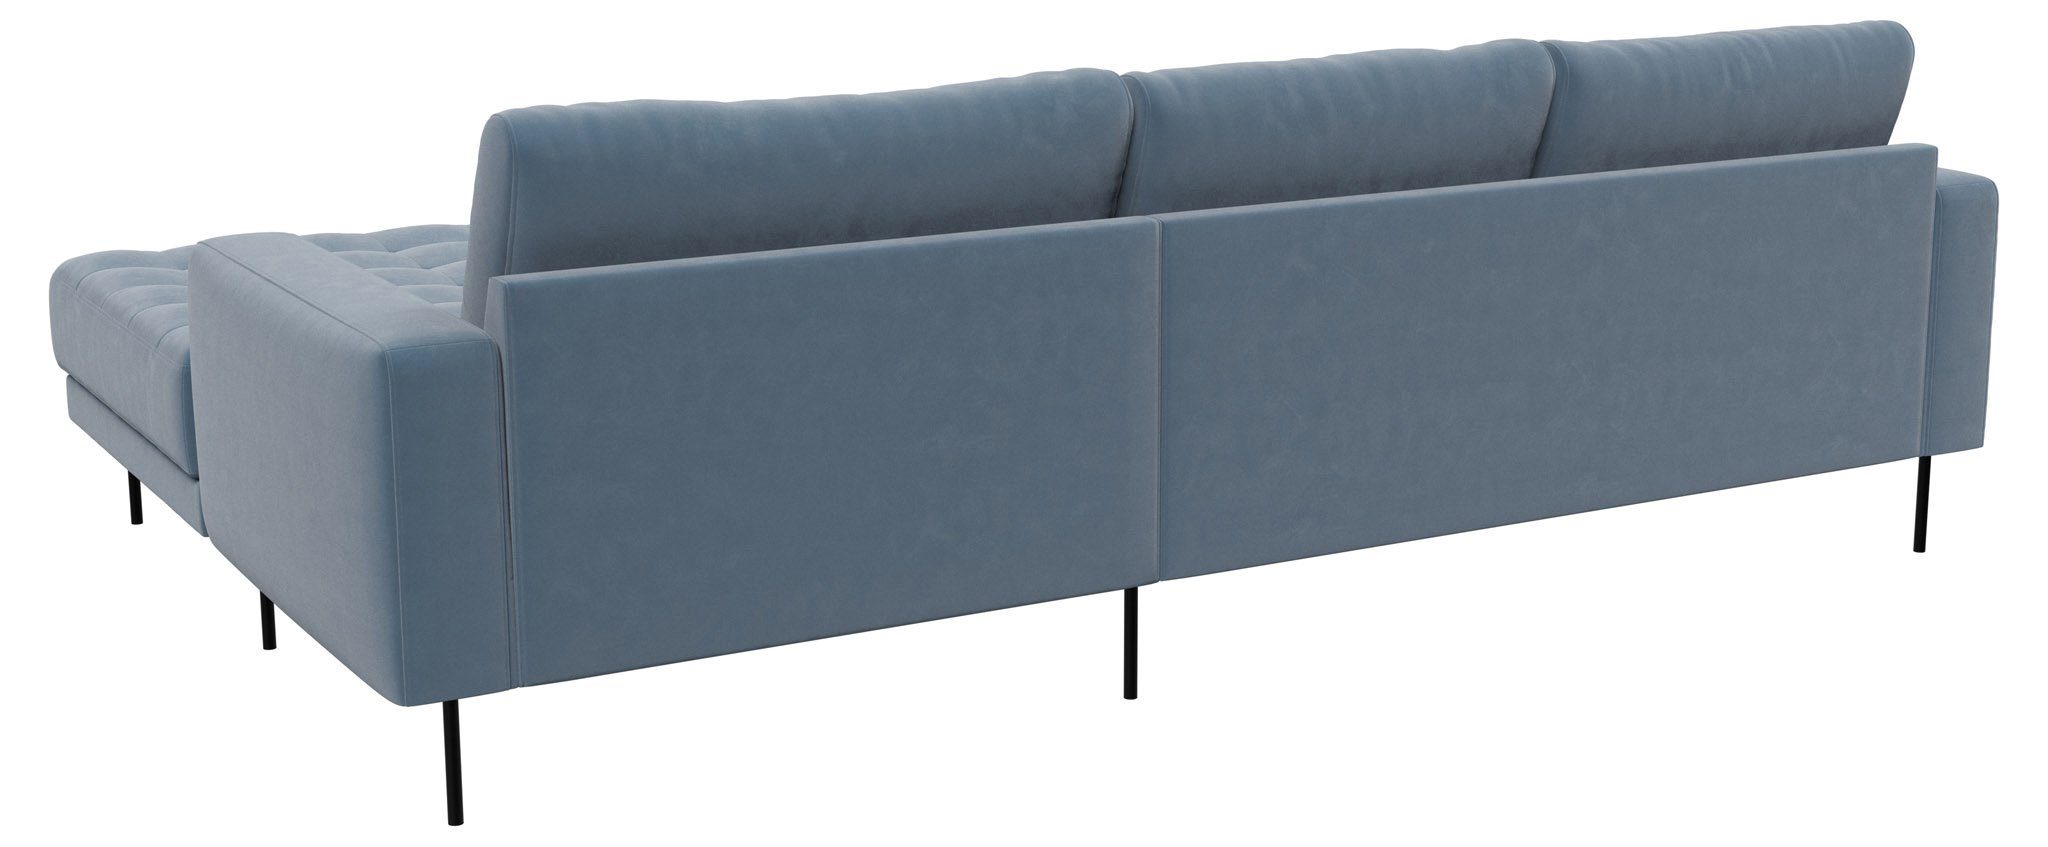 ebuy24 Sofa Rouge Staubblau//Rechtsgewendet mit.//Staubblau//Rechtsgewen 2,5-Sitzer-Sofa